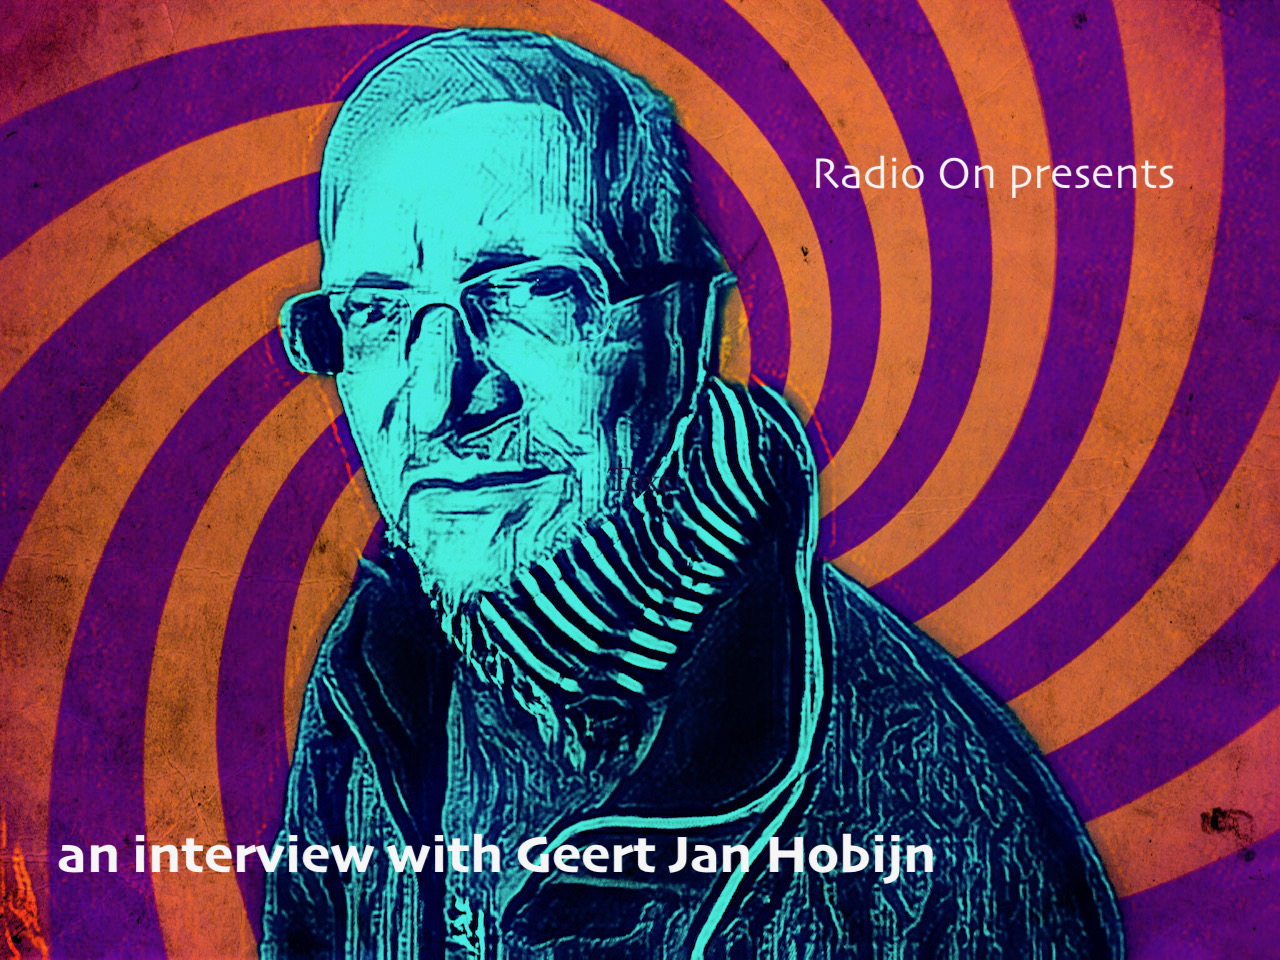 Interview with Geert Jan Hobijn